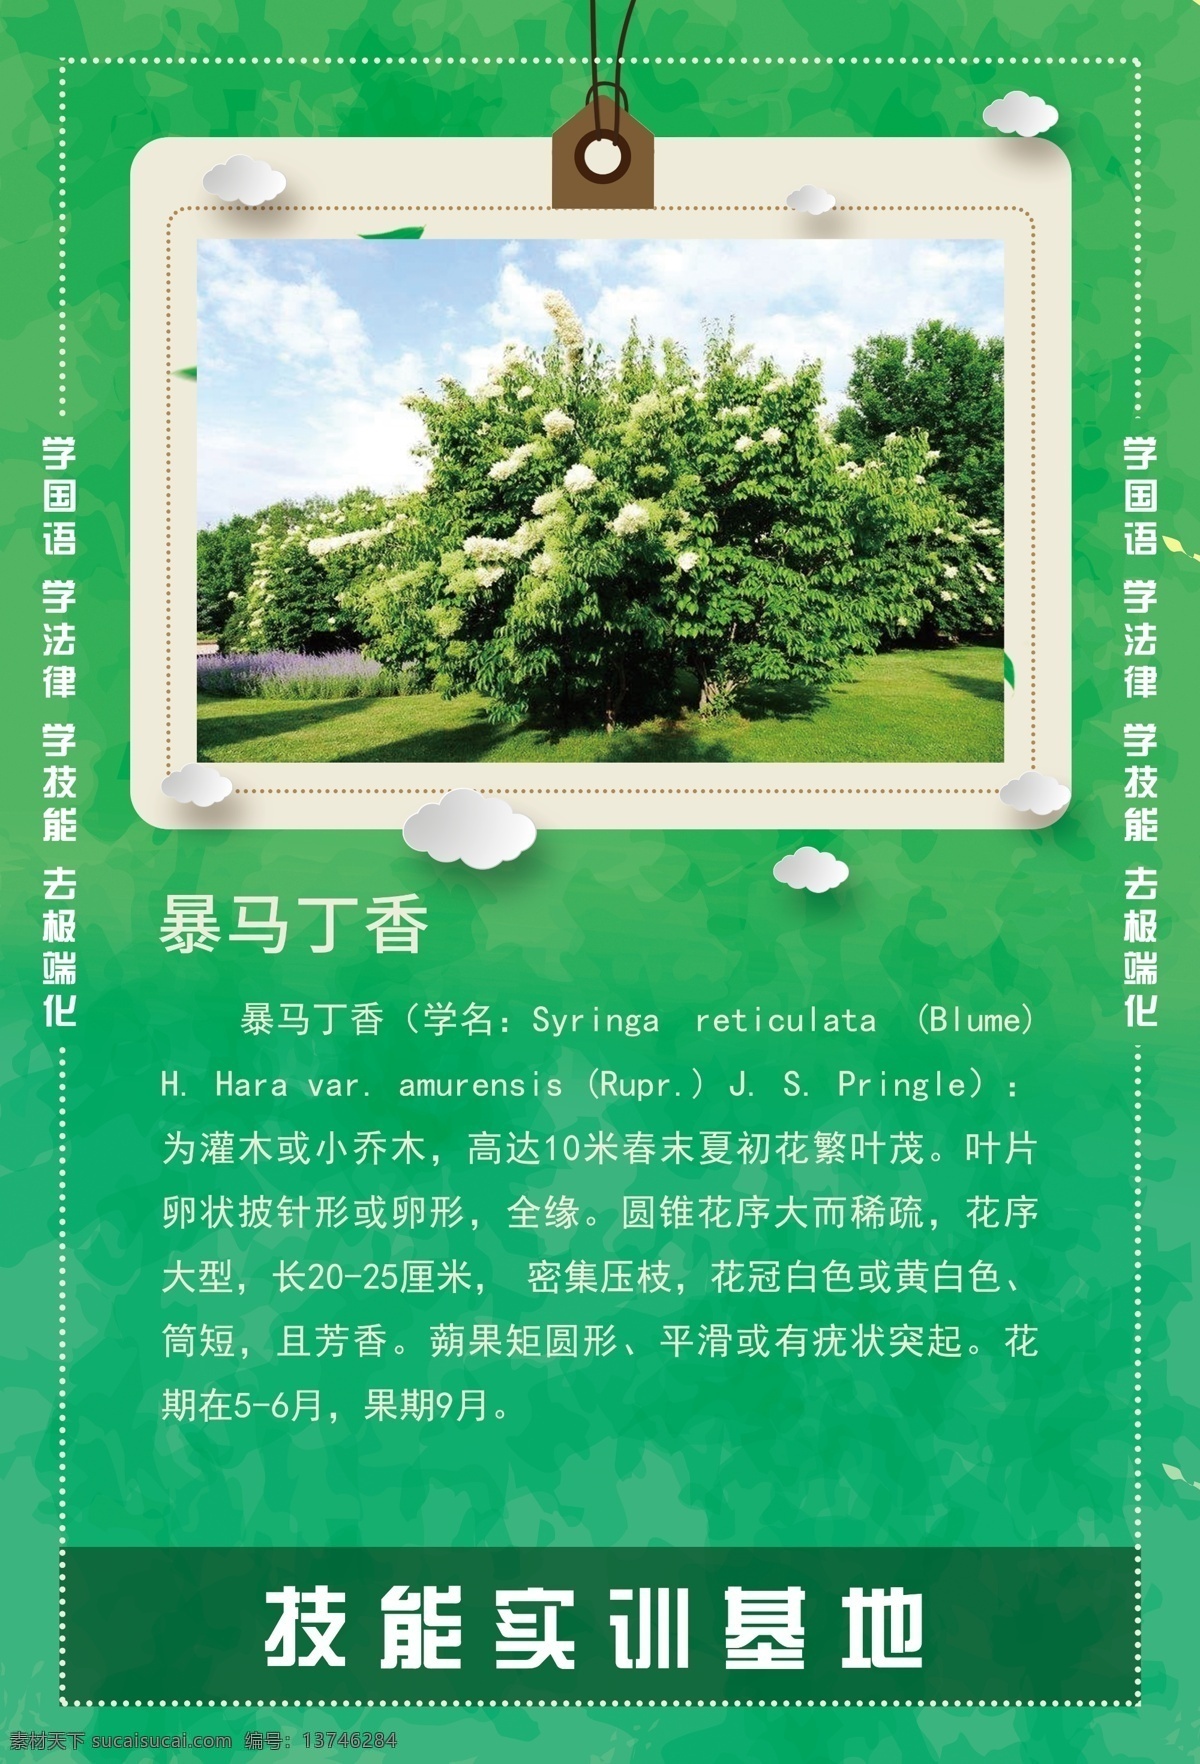 暴马丁香 树 植物 系列 植物简介 树枝 海报 挂画 精艺广告